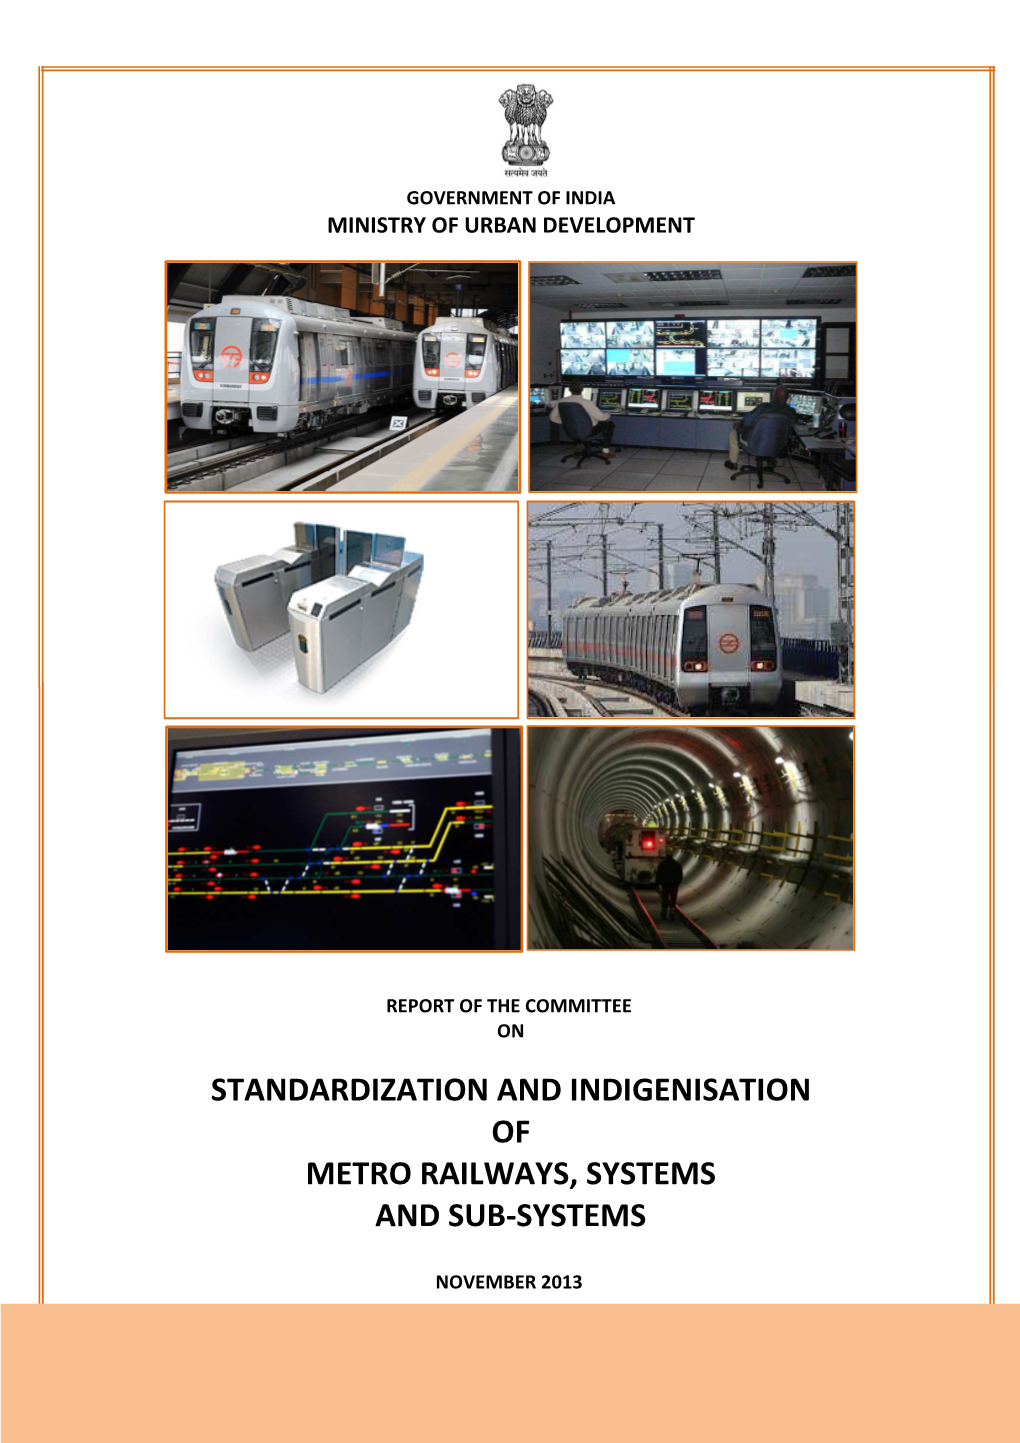 Base Paper on Standardization and Indigenization of Metro Railways